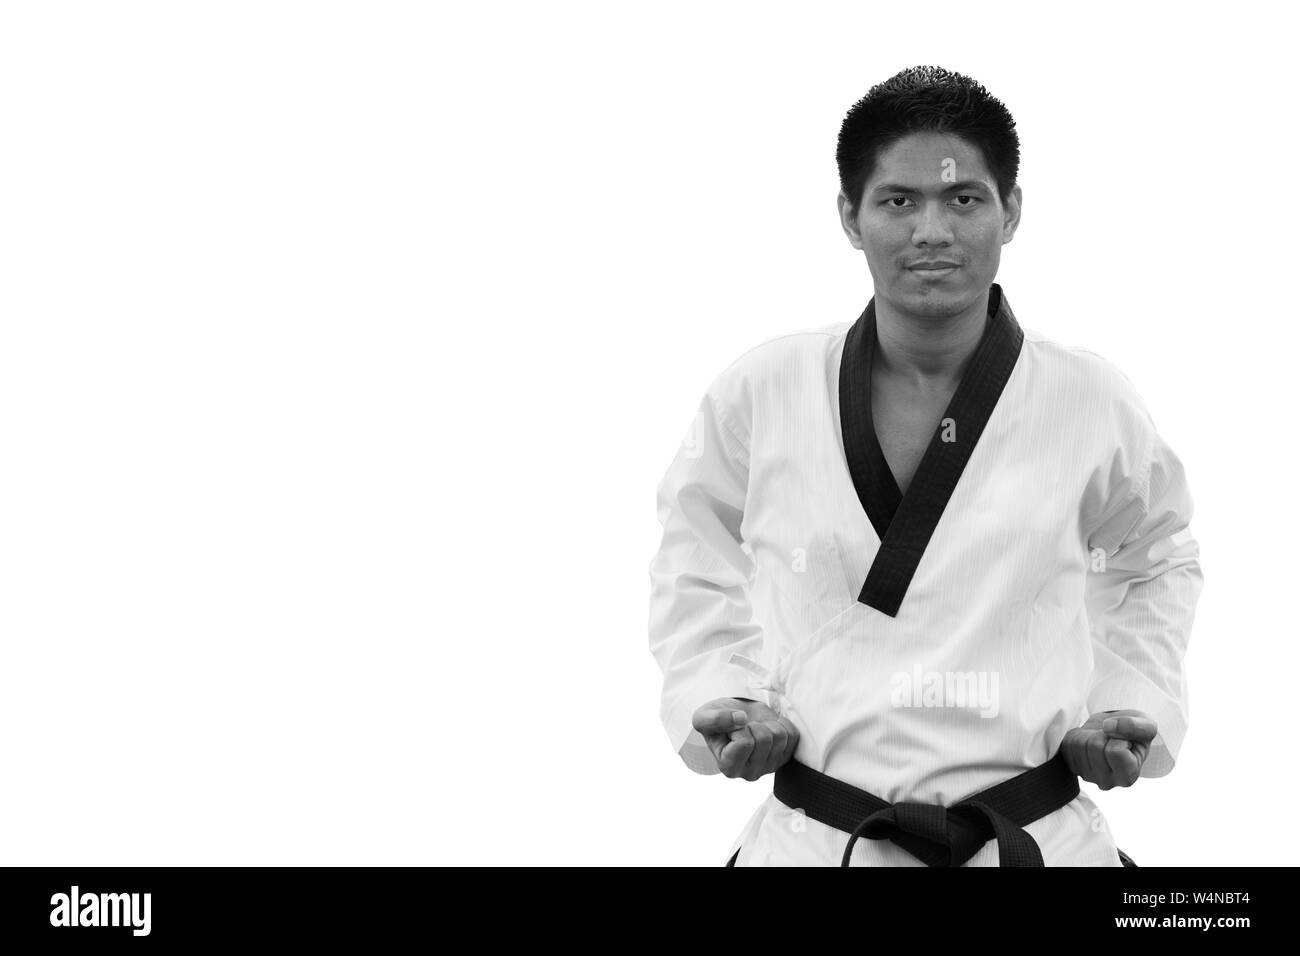 Taekwondo ceinture noire homme isolé sur fond blanc avec clipping path Banque D'Images